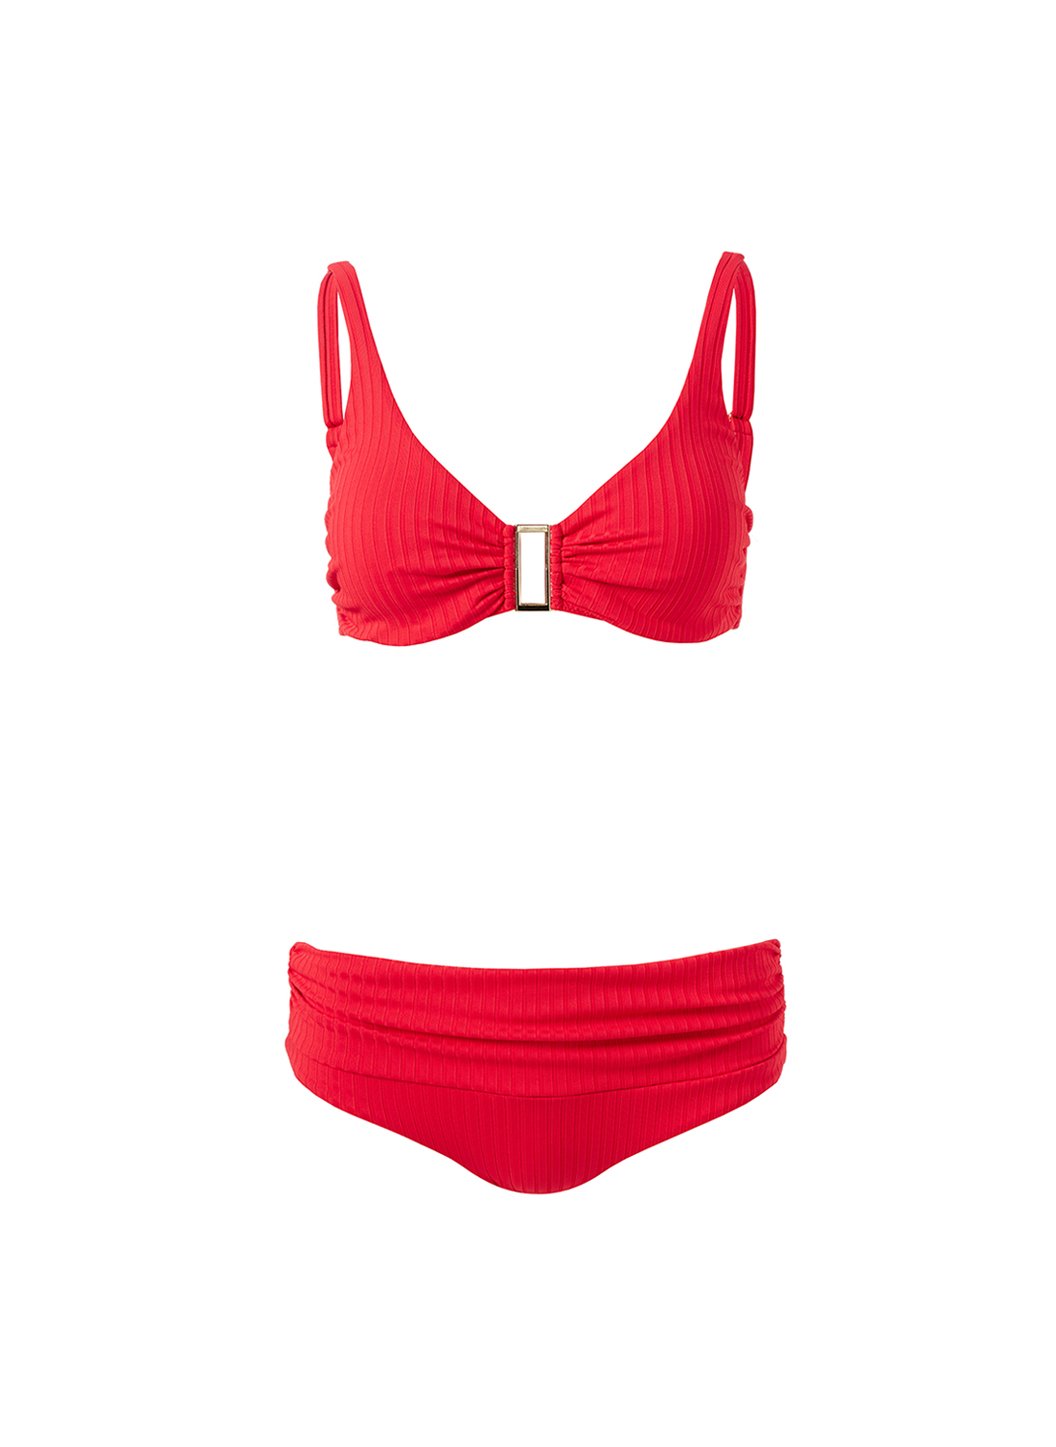 Bel Air Red Ribbed Bikini